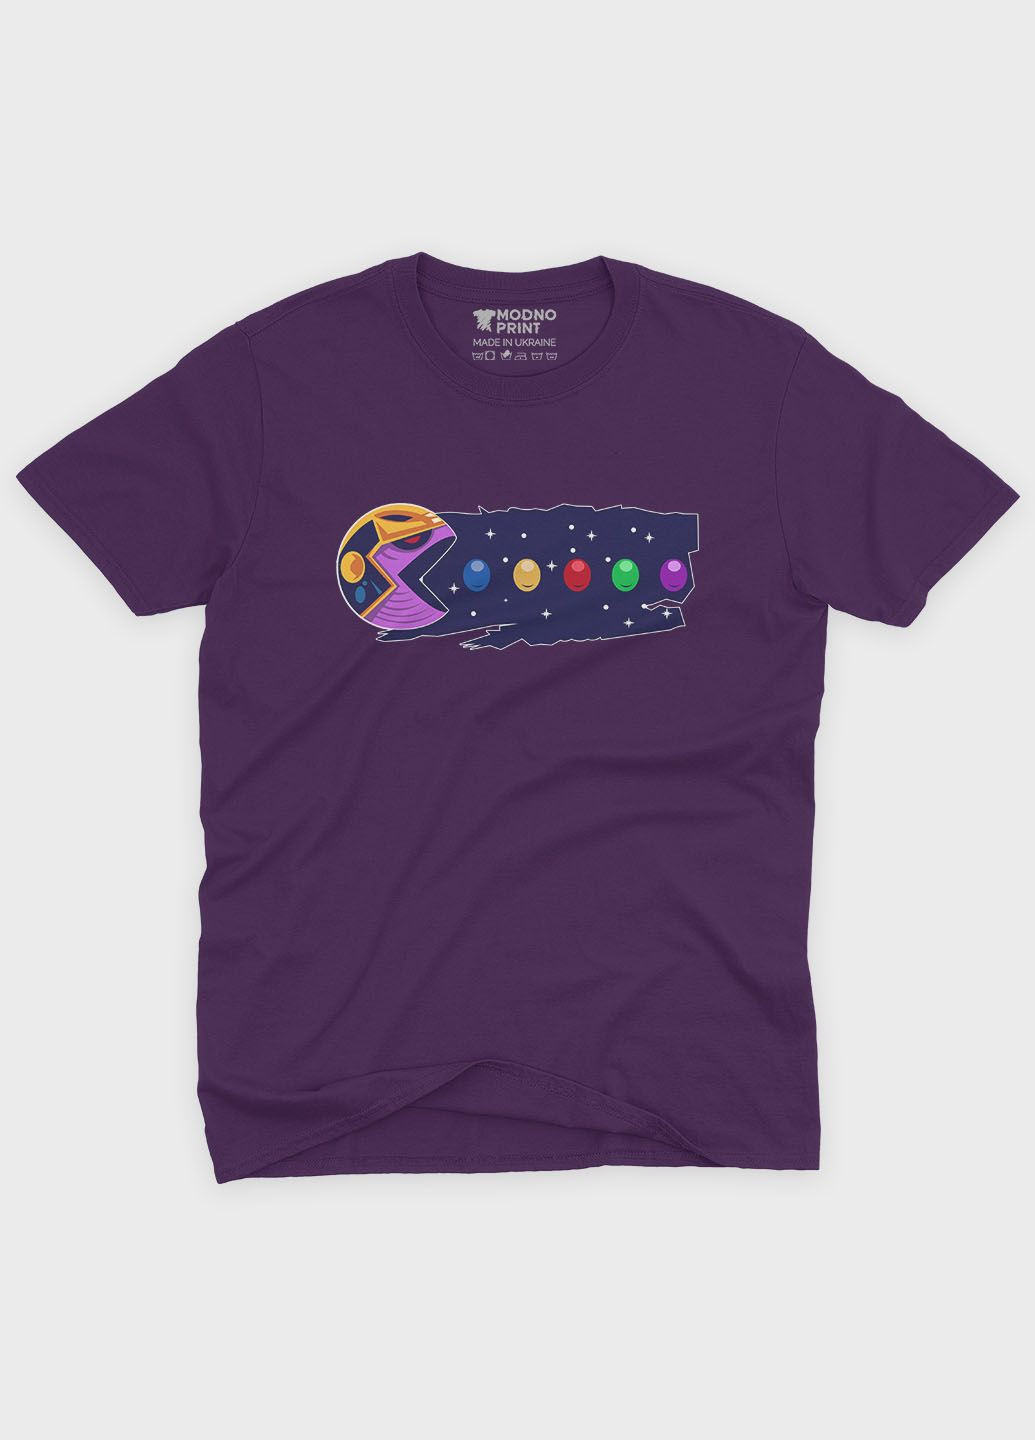 Фиолетовая демисезонная футболка для мальчика с принтом супезлоды - танос (ts001-1-dby-006-019-015-b) Modno